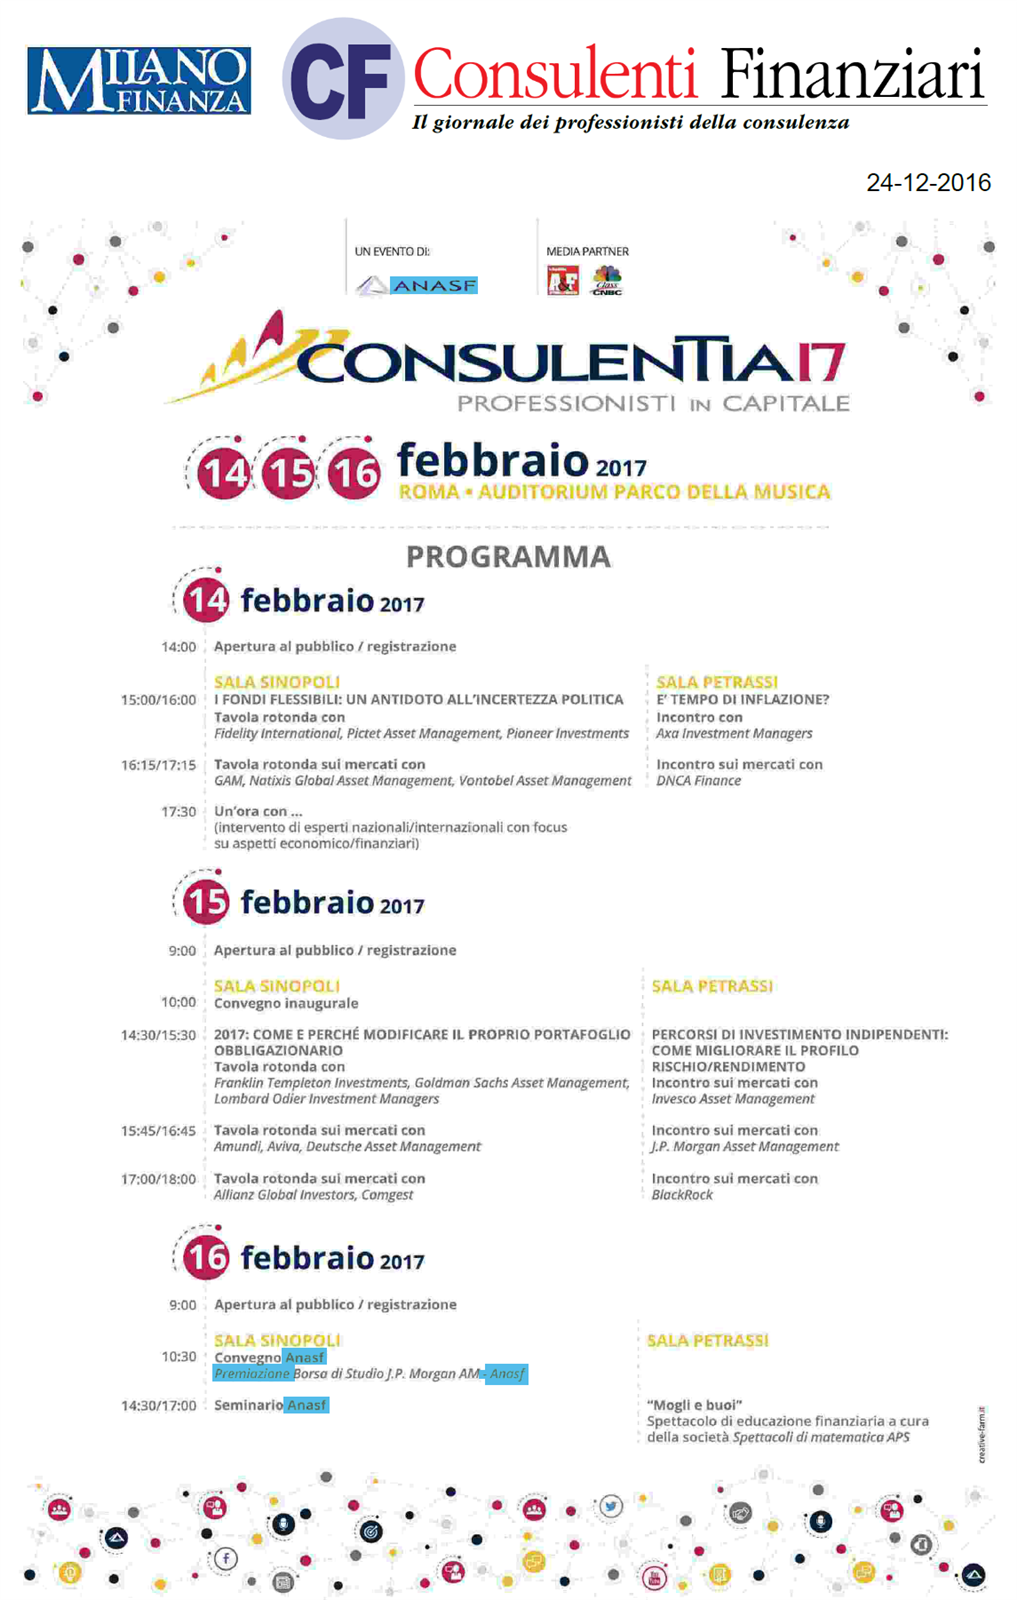 Programma di Consulentia17 Roma su CF-Milano Finanza